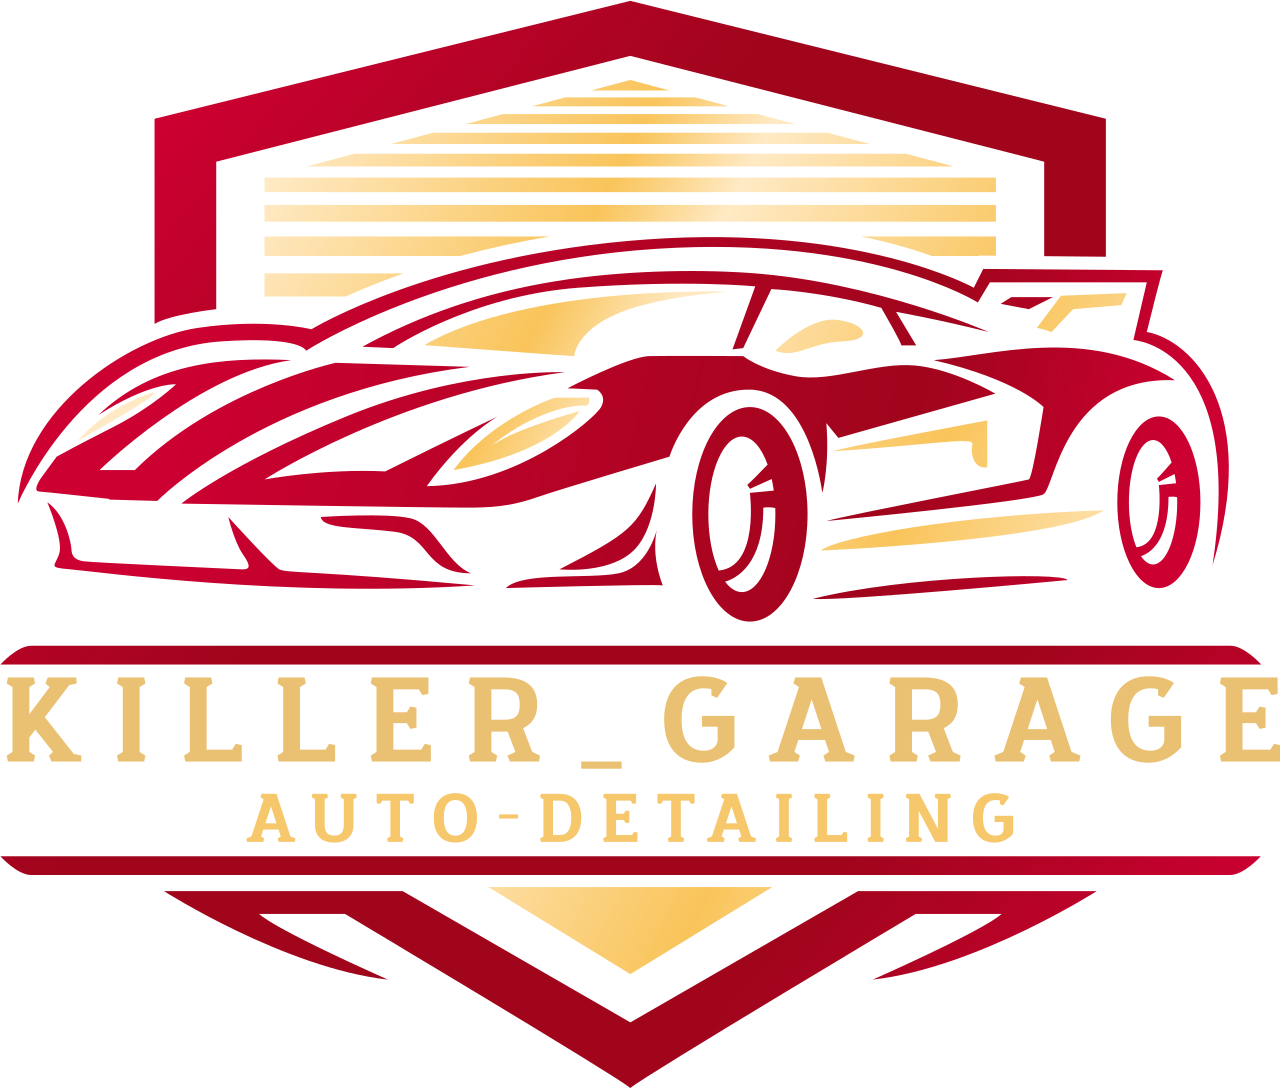 Killer_Garage's logo